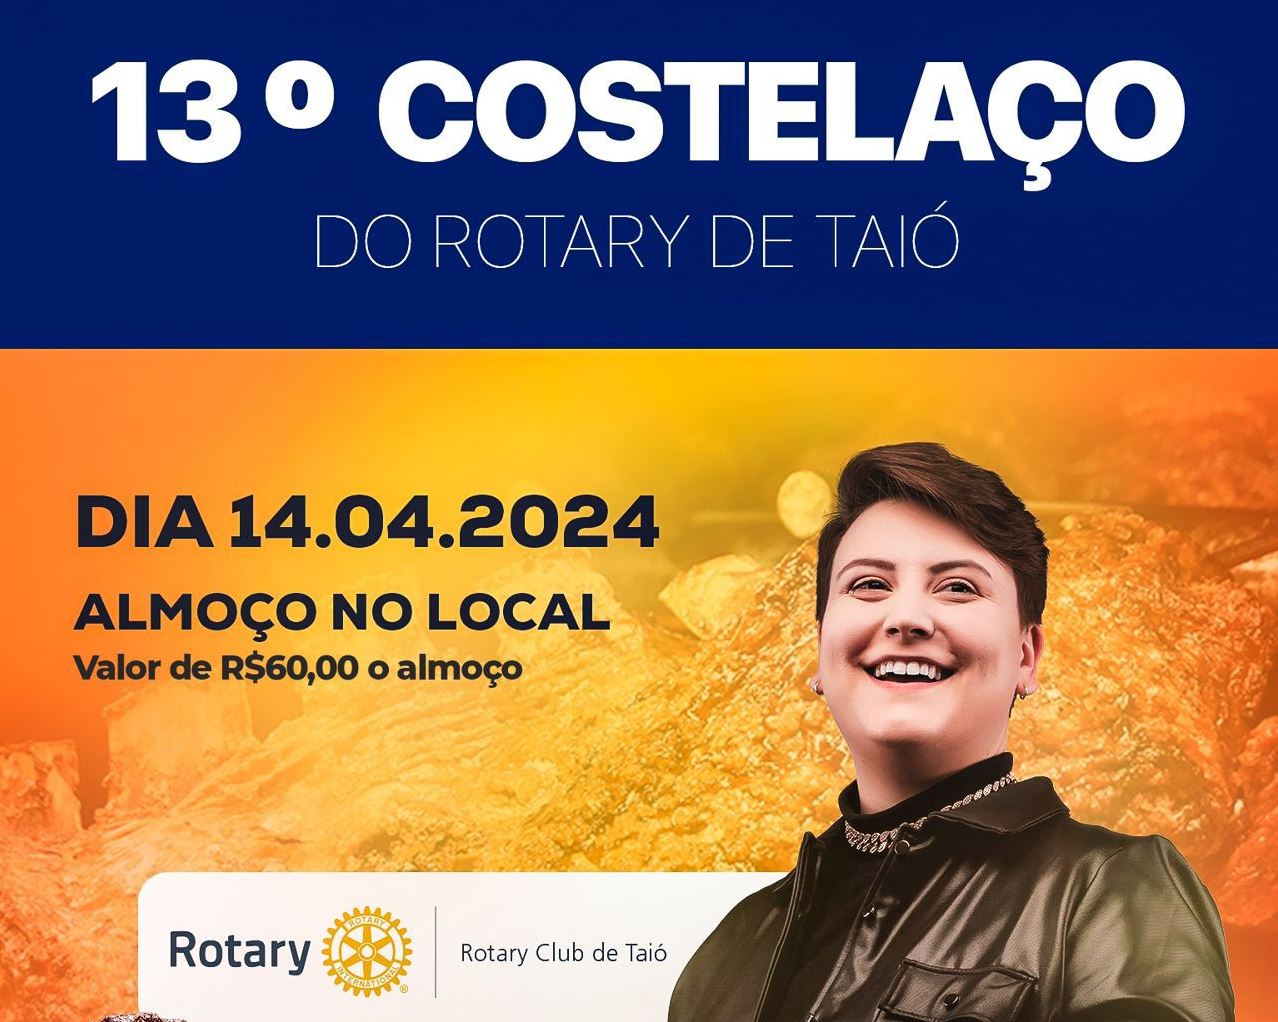 Vem aí, neste domingo (14), o 13º Costelaço do Rotary Club de Taió